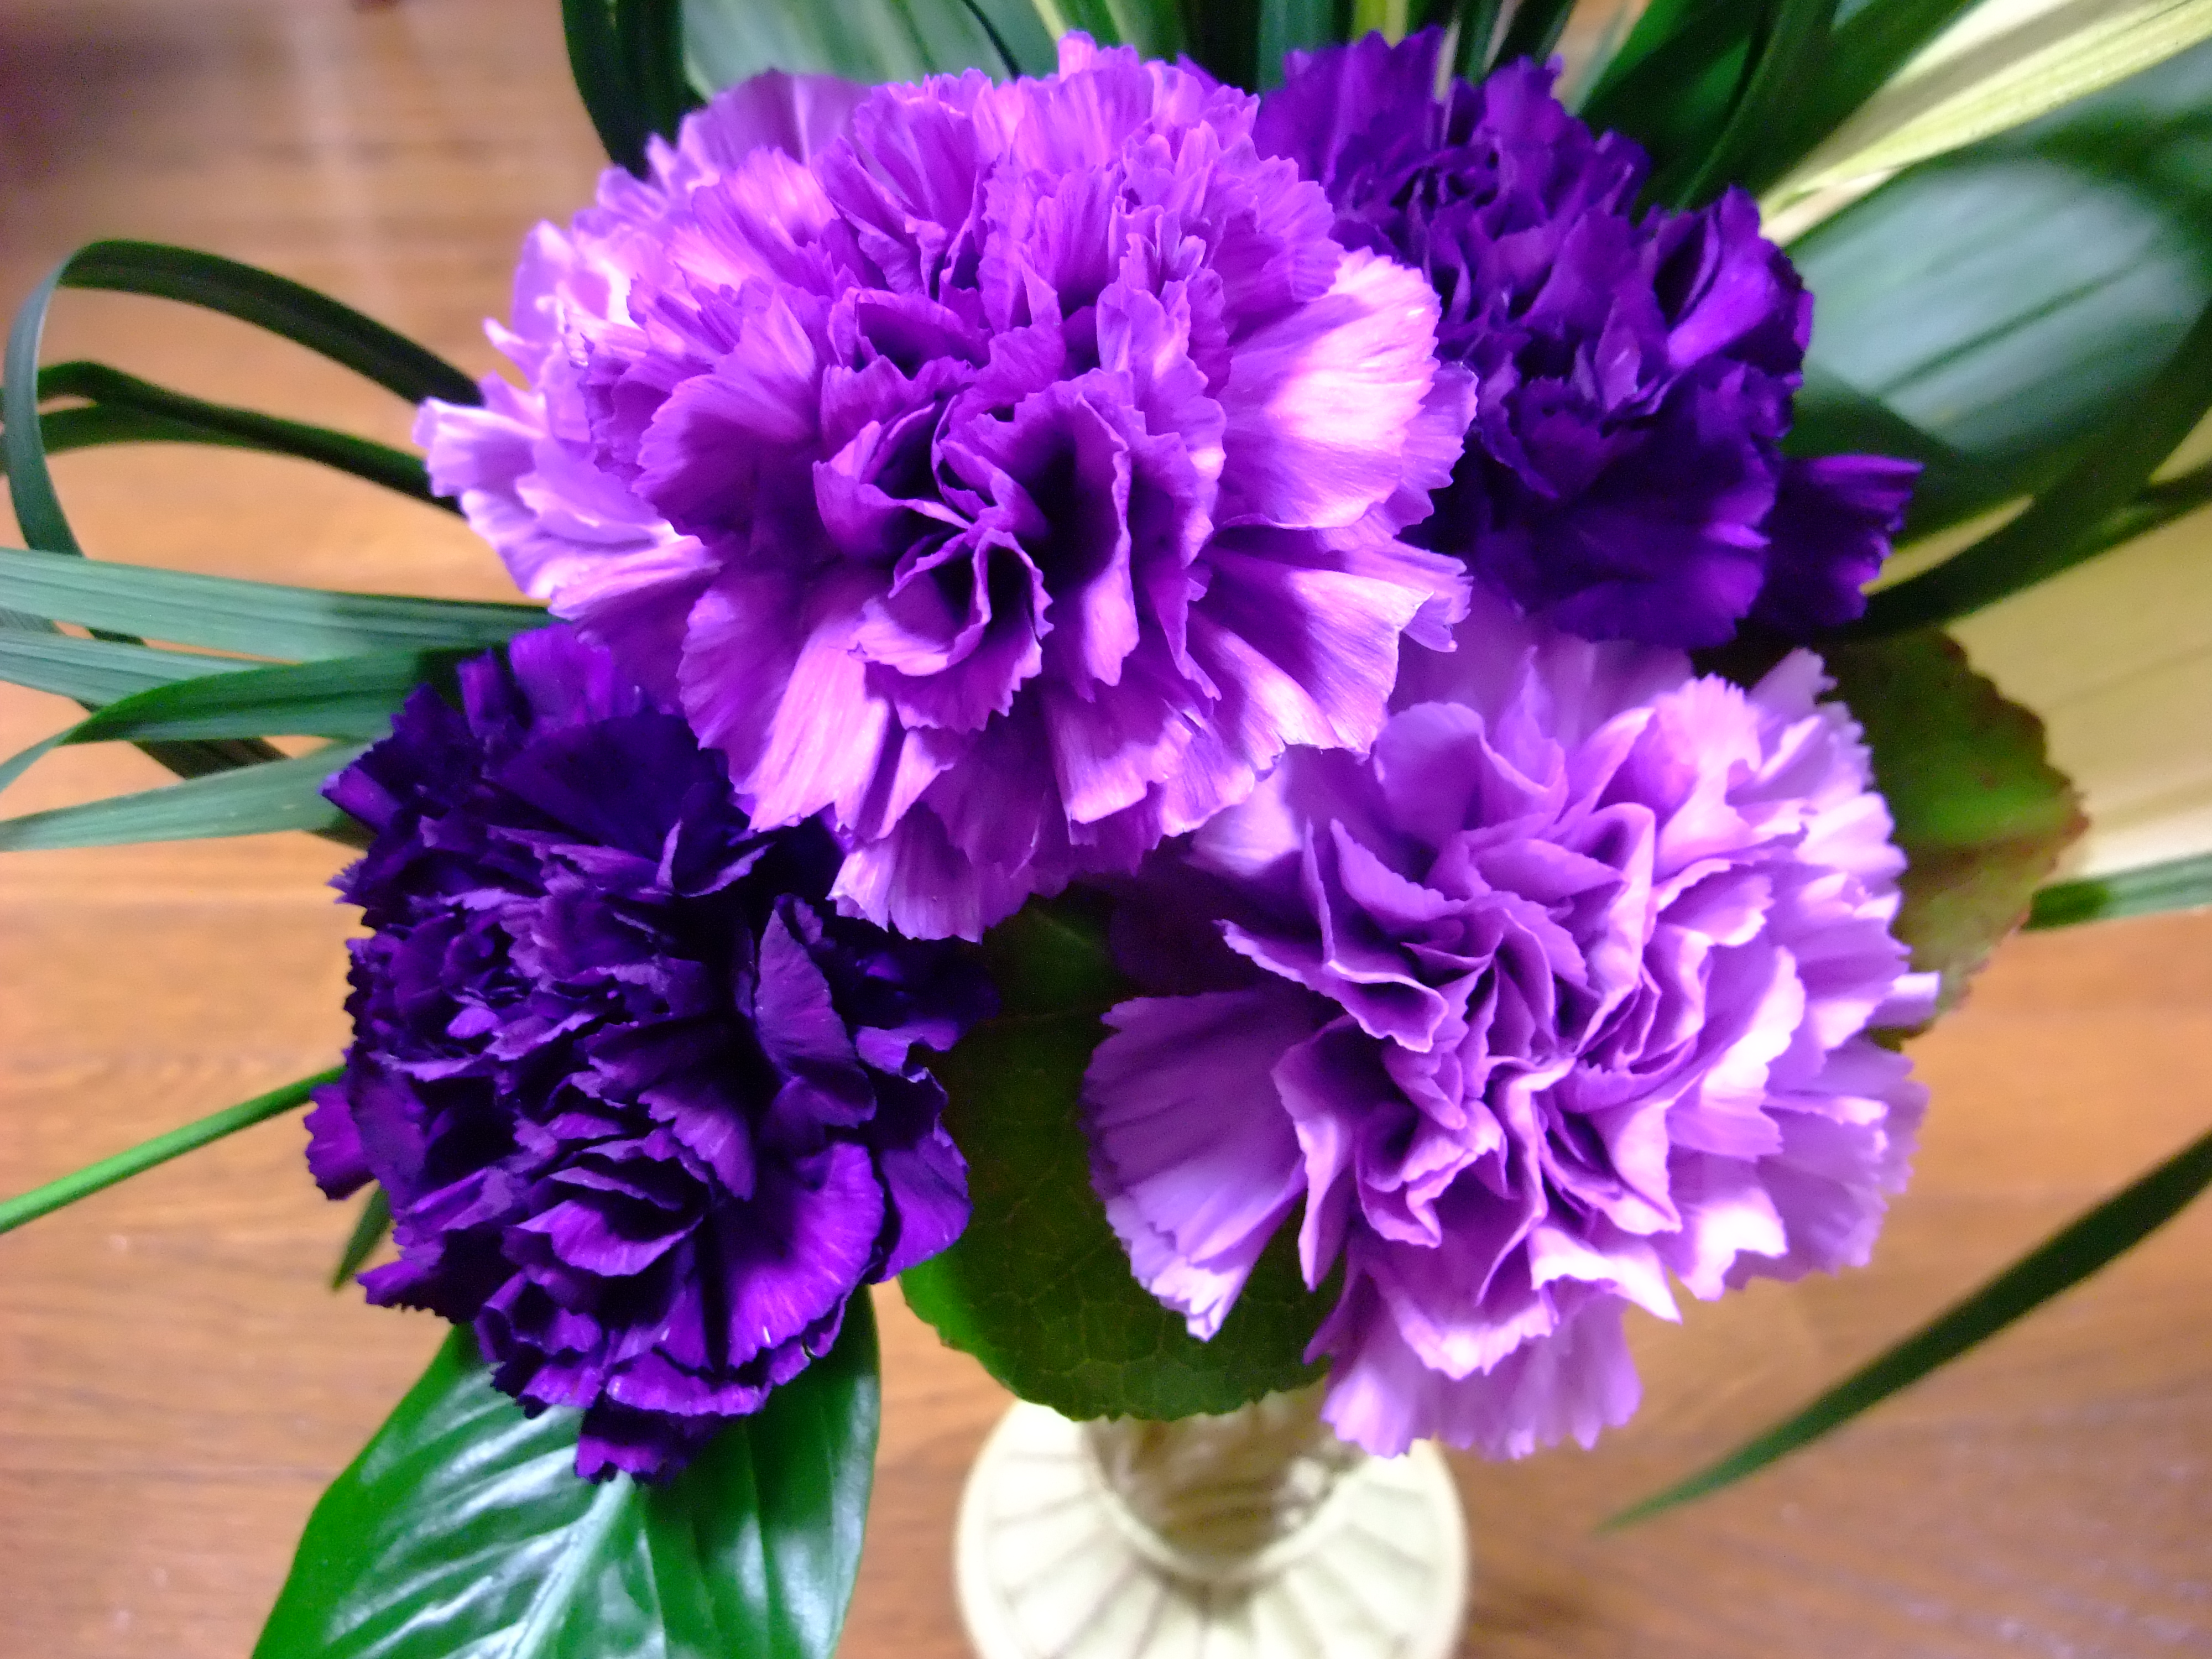 Tổng hợp hình ảnh hoa cẩm chướng tím đẹp nhất - [Kích thước hình ảnh: 4000x3000 px]